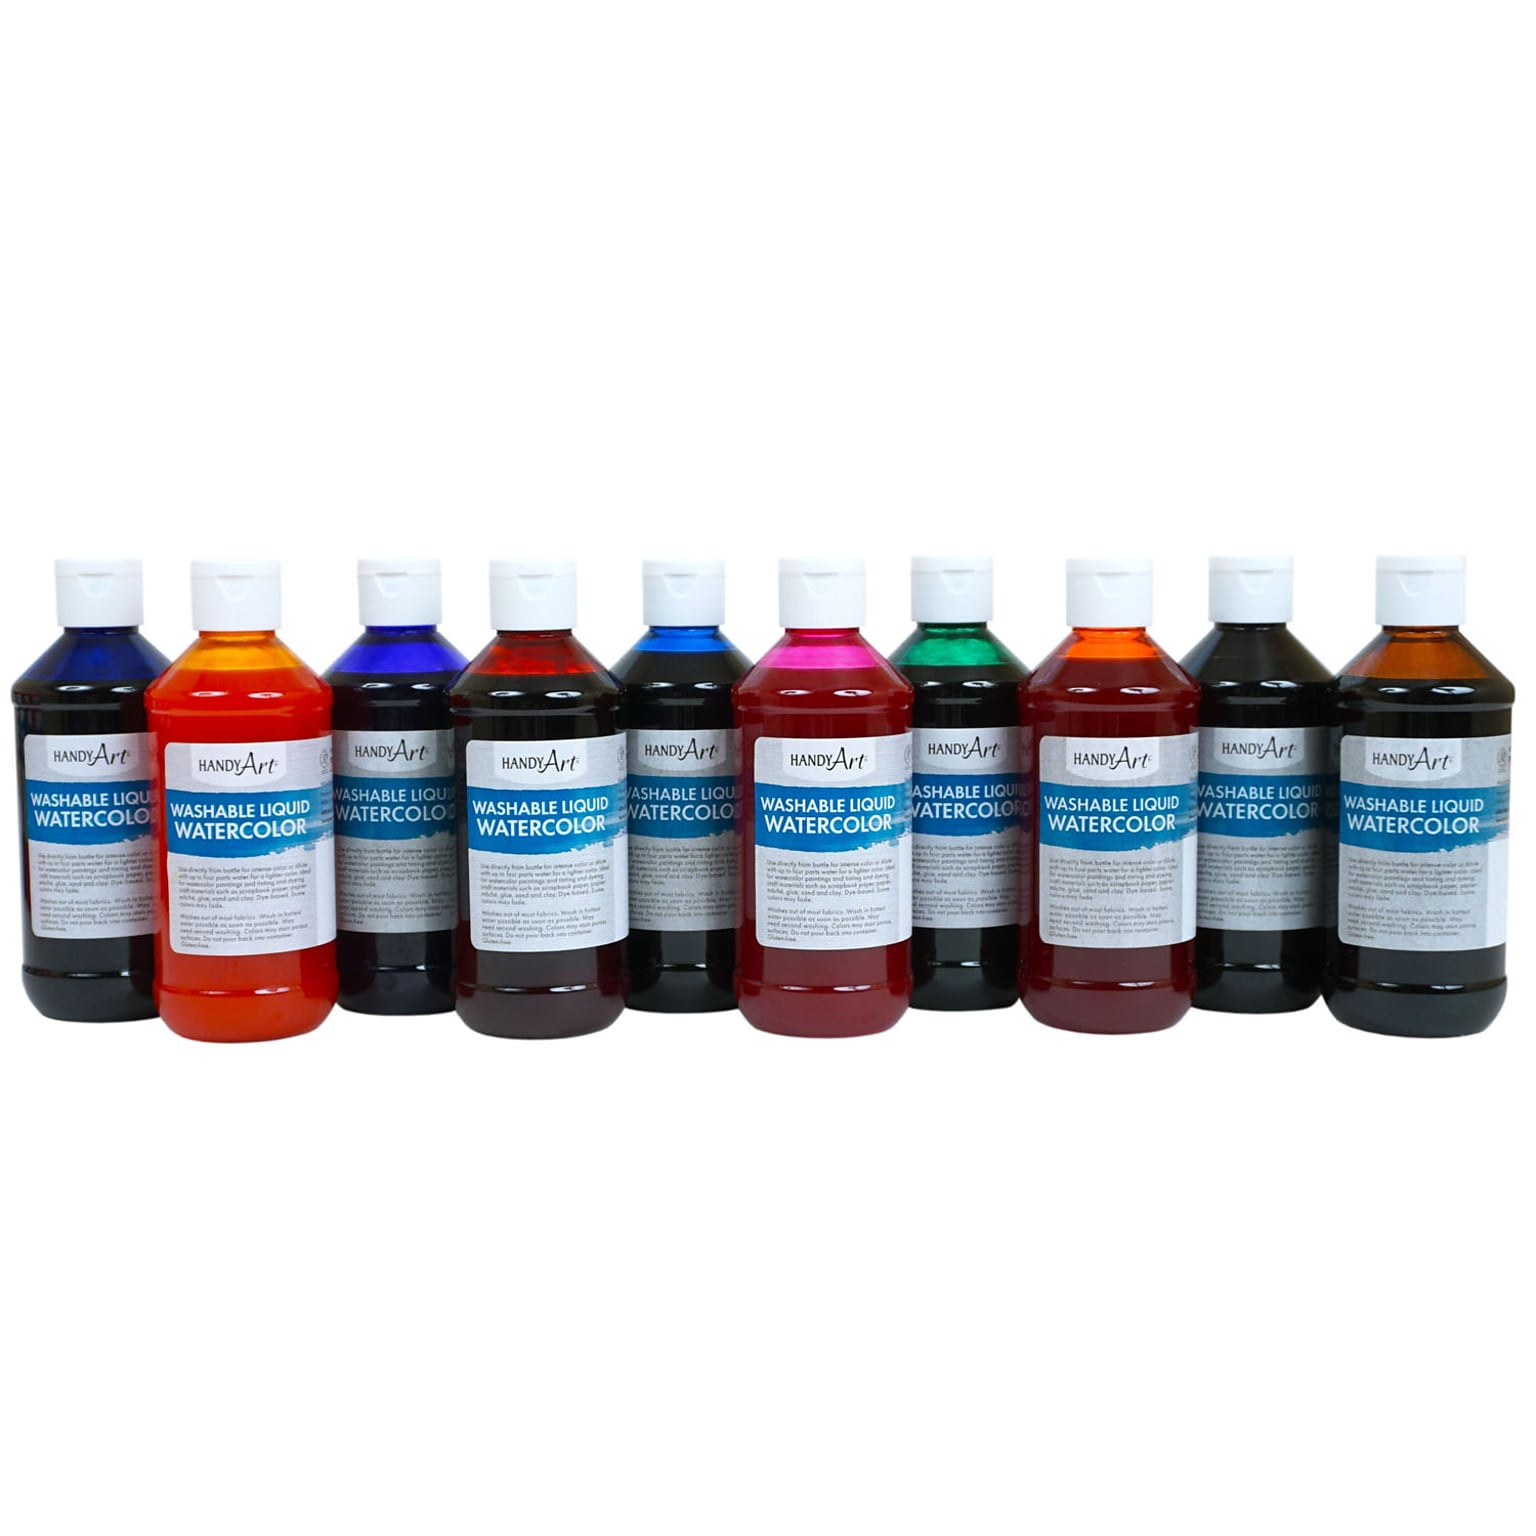 Handy Art Washable Liquid Watercolors, 8 oz. Bottles, Assorted Colors, 10-Color Basic Kit (RPC882275)